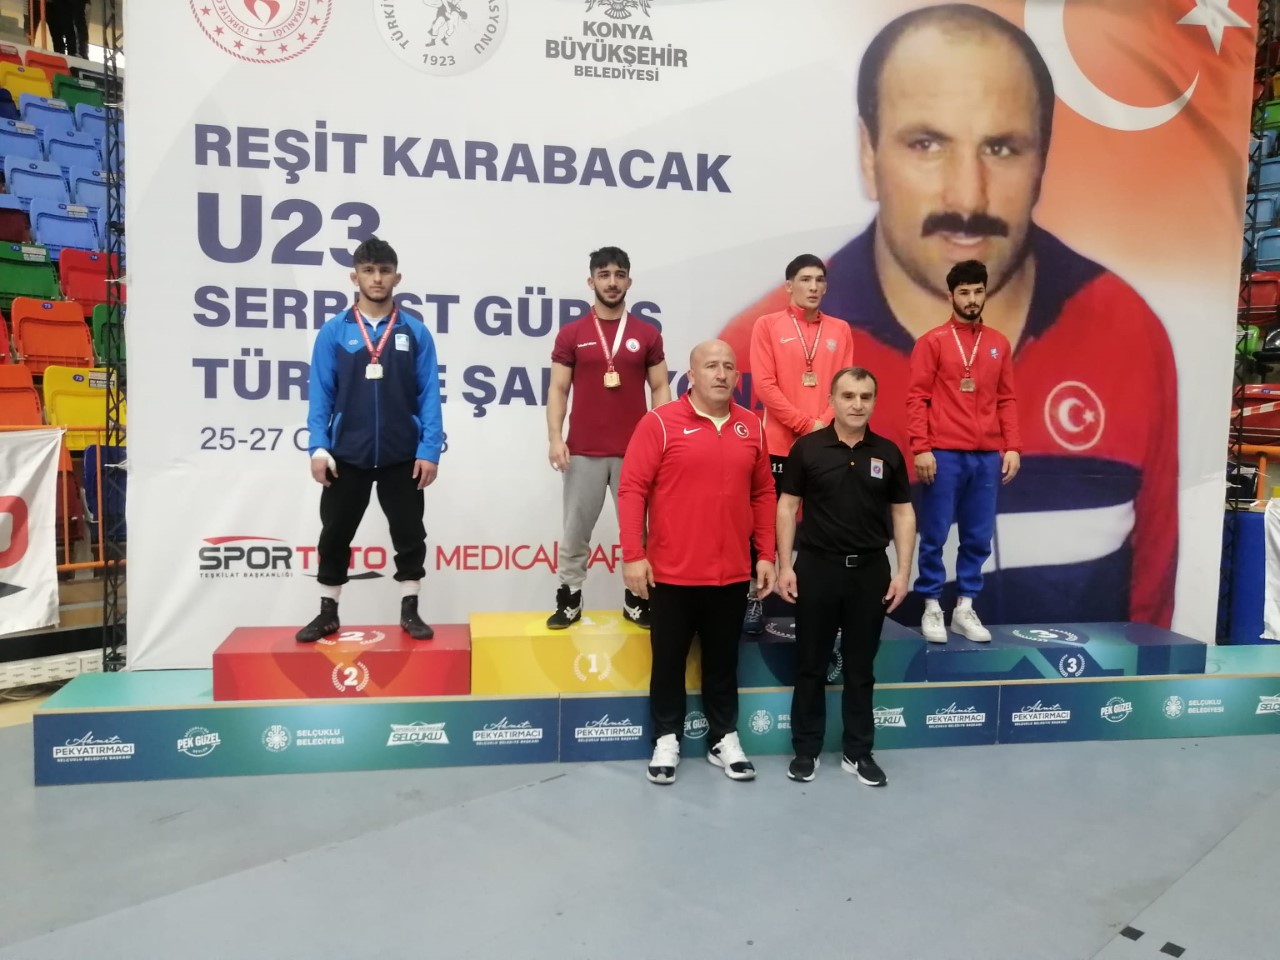 BARÜ’lü Milli Sporcu Emre Kural, Türkiye şampiyonu oldu

